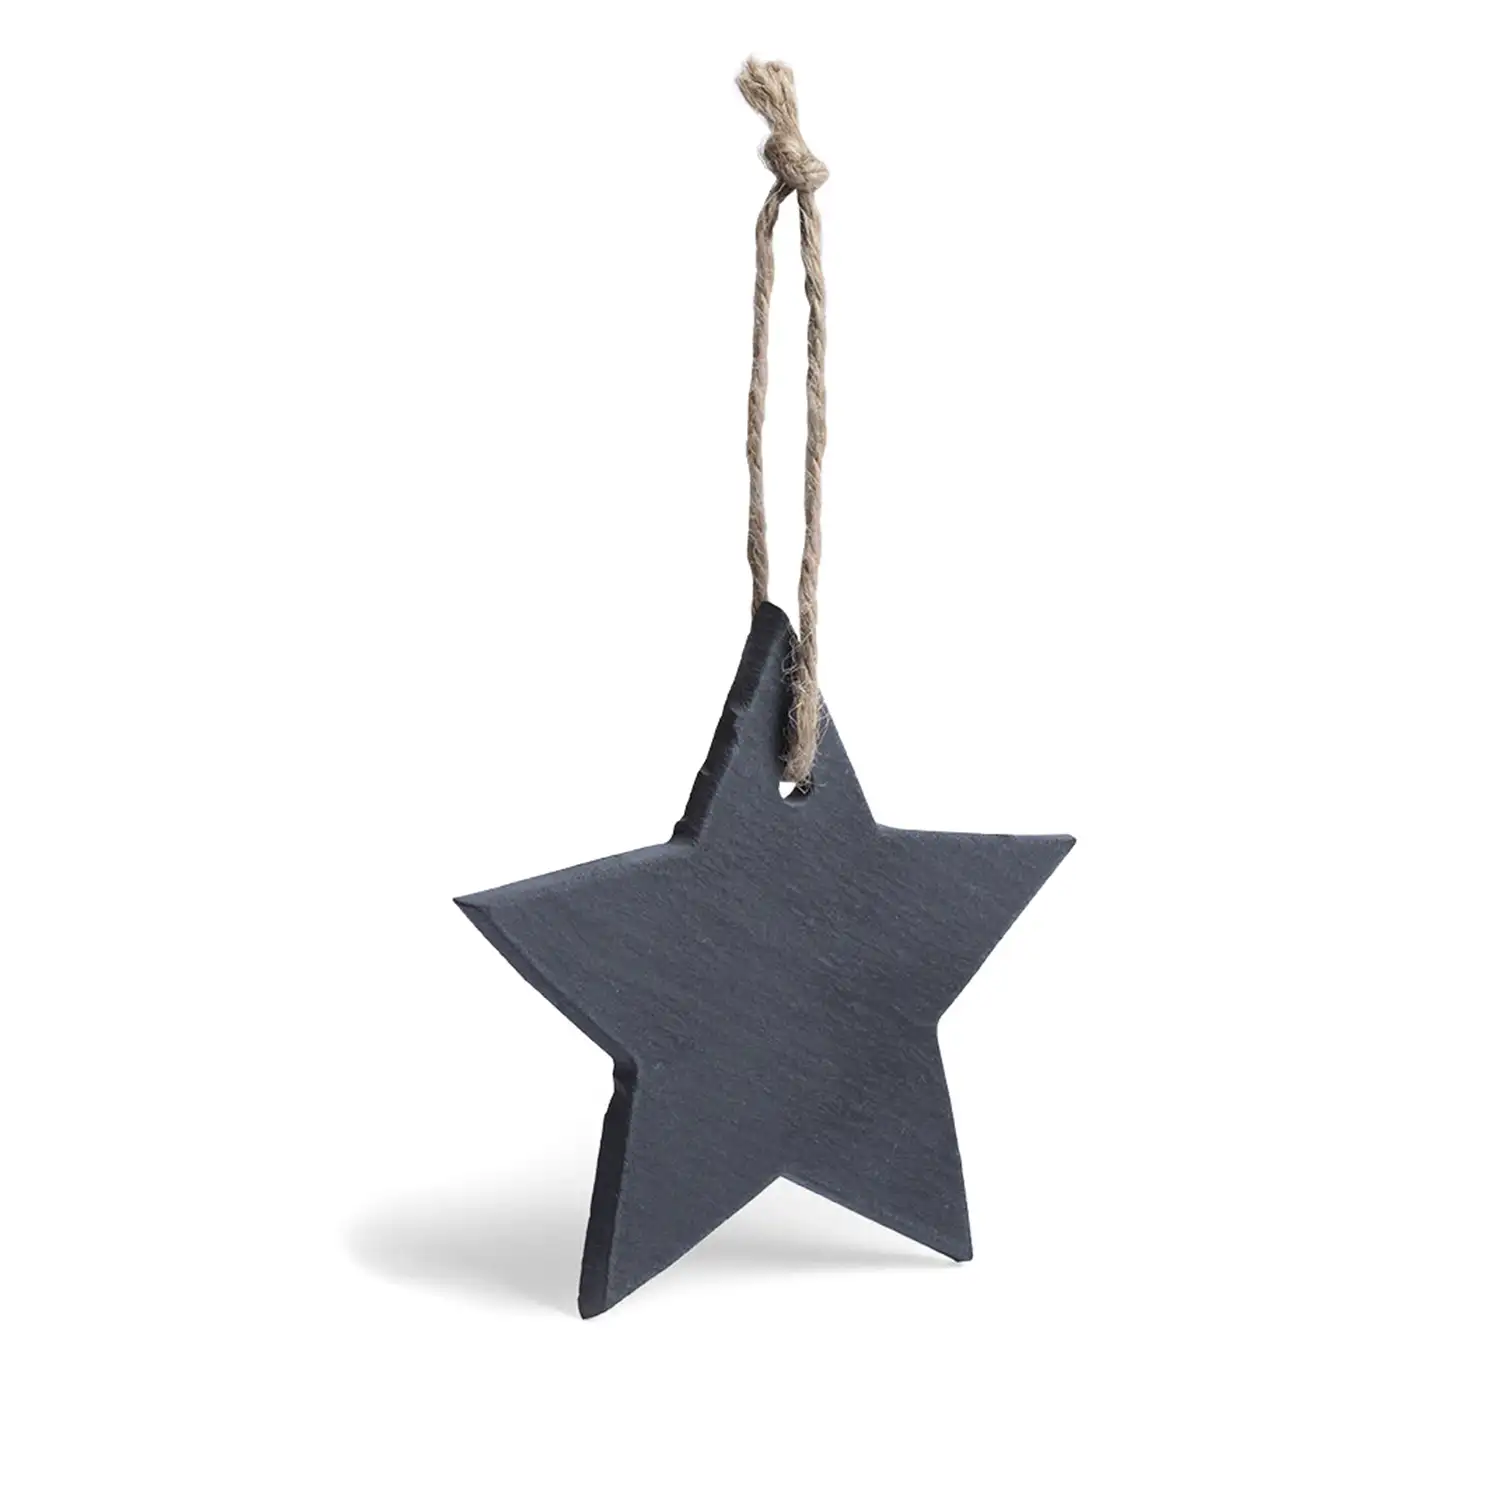 Adorno navideño en pizarra, con lacito para colgar. Diseño estrella.